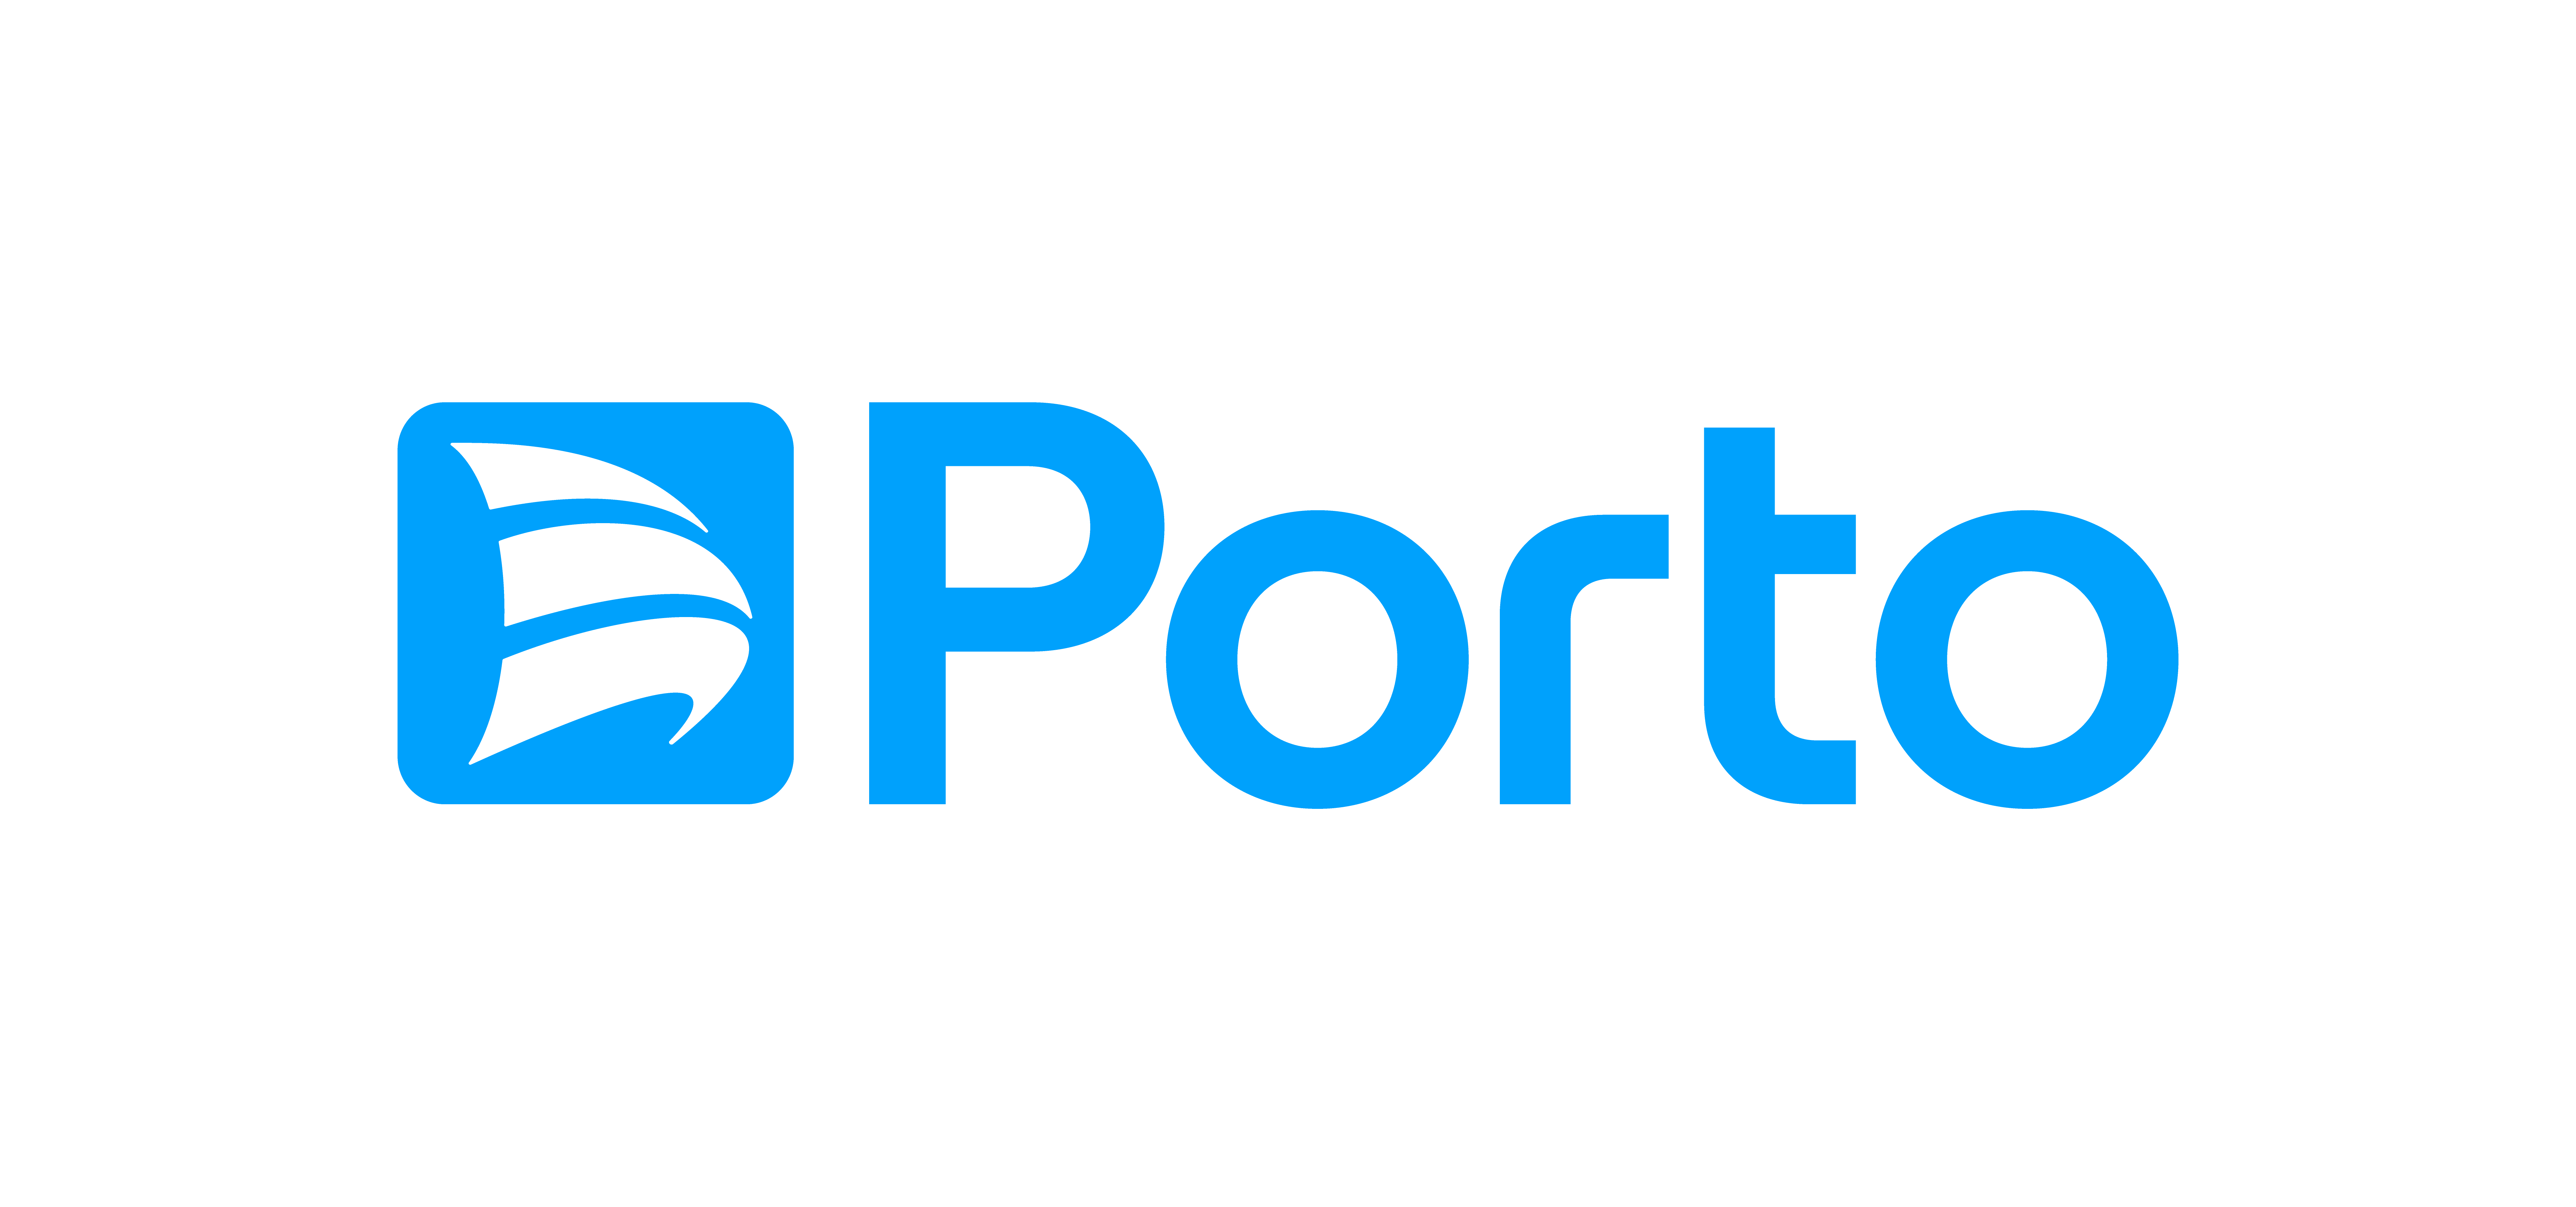 Logo Porto Seguro